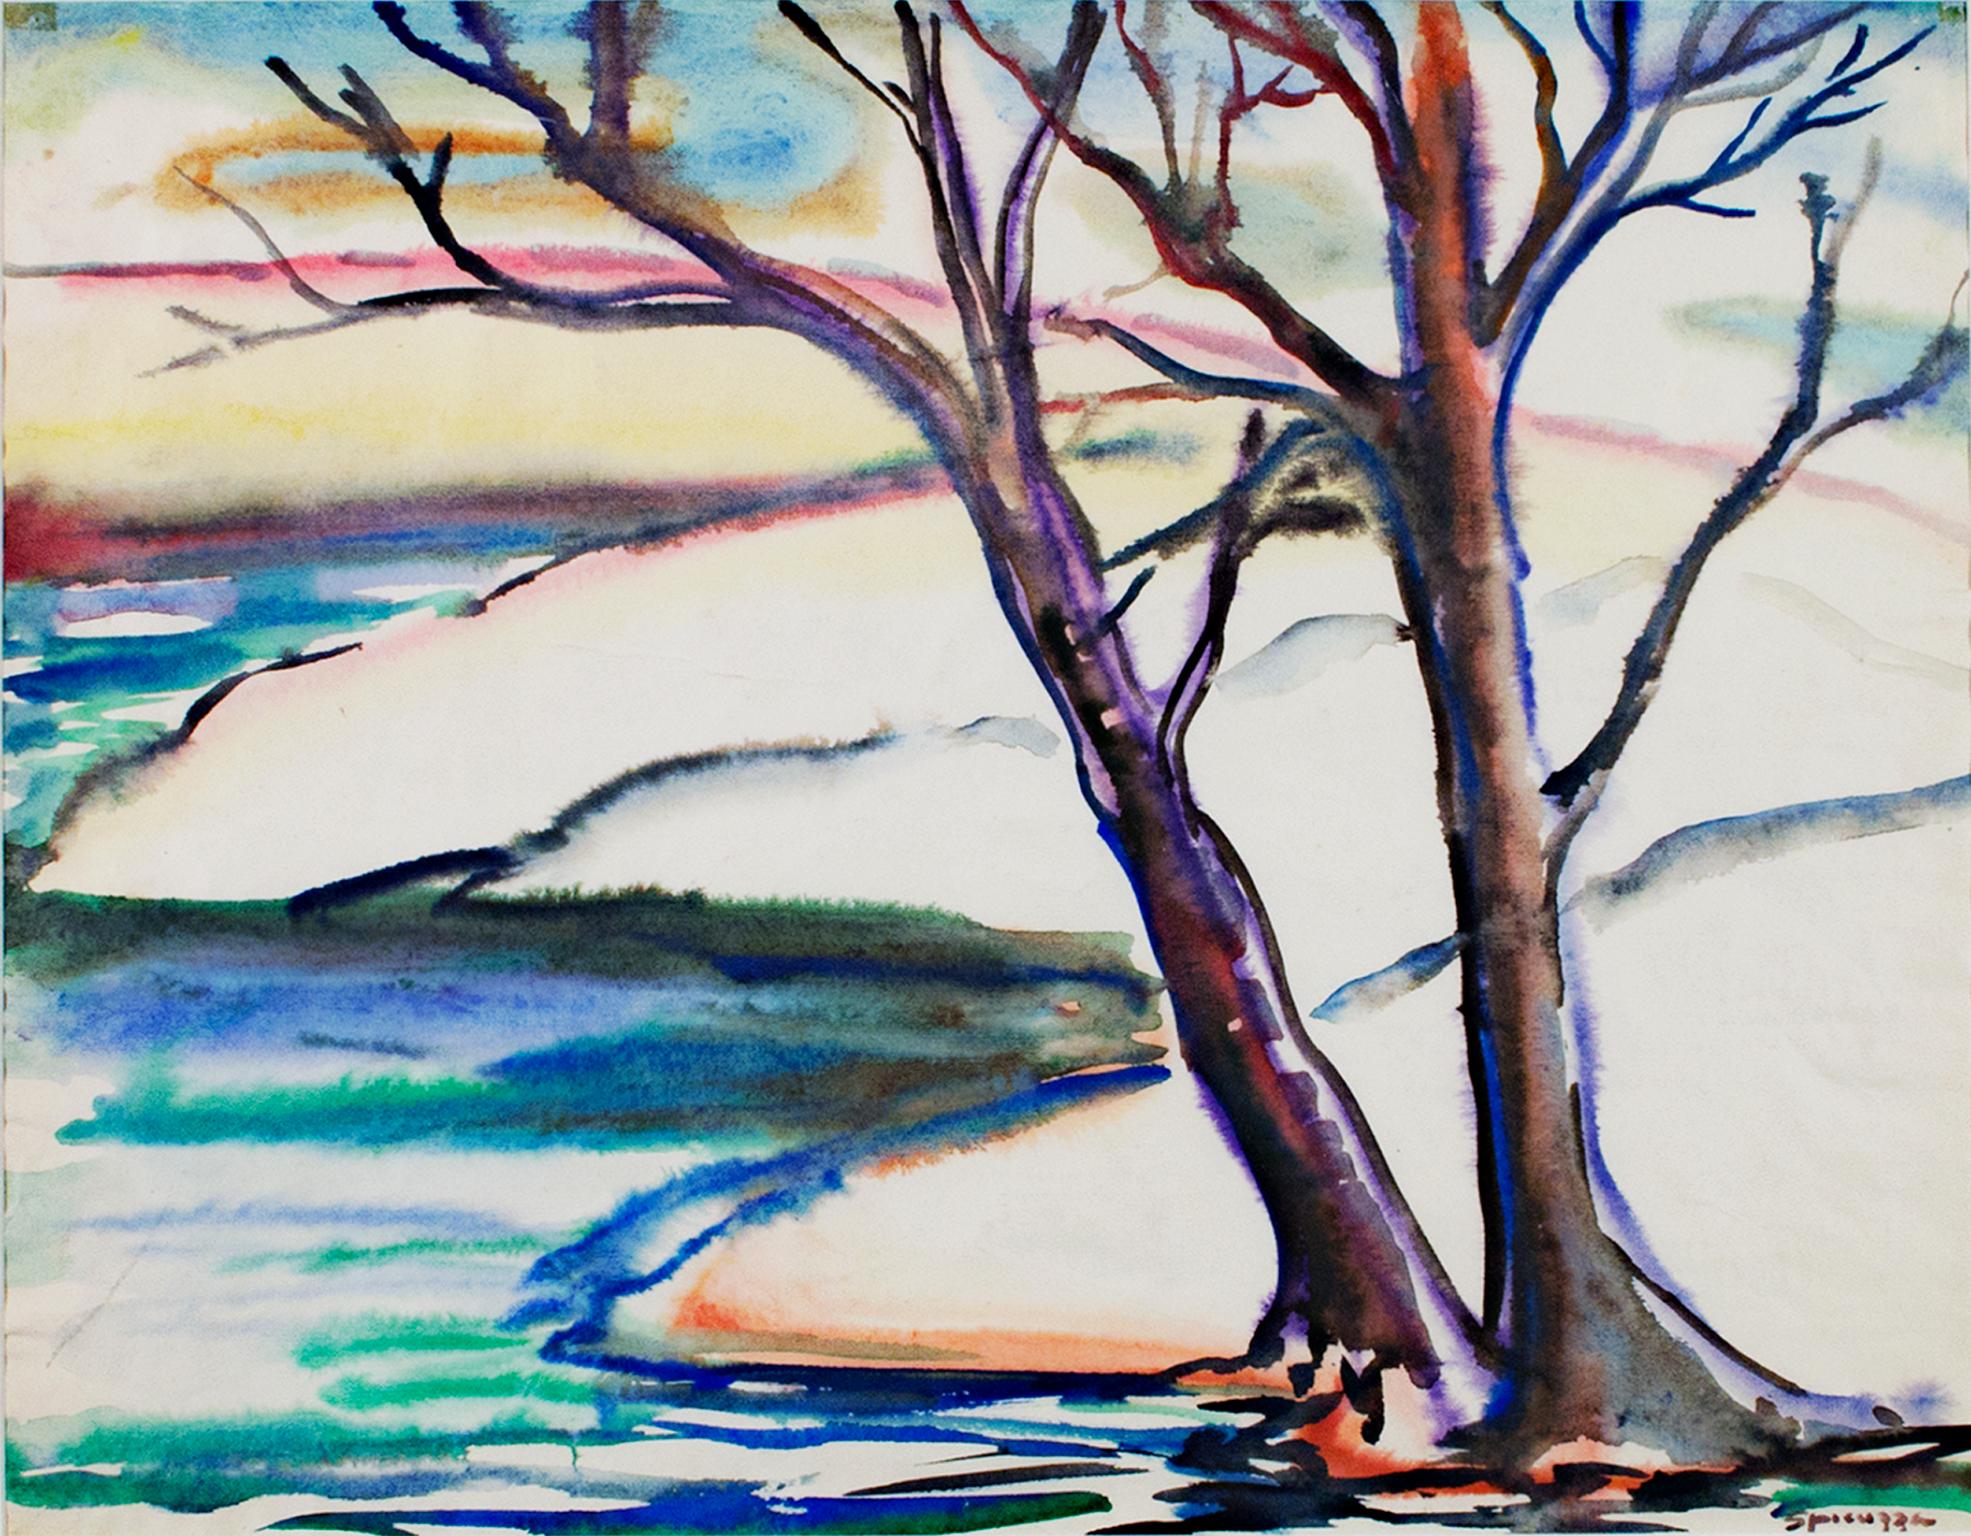 "Early Spring Landscape #303" ist ein Original-Aquarell von Sylvia Spicuzza. Der Künstler hat das Werk unten rechts signiert. Es zeigt zwei blattlose Bäume am Rande eines Gewässers mit verschneiten Ufern dahinter. 

19" x 24 1/2" Papier
28" x 33